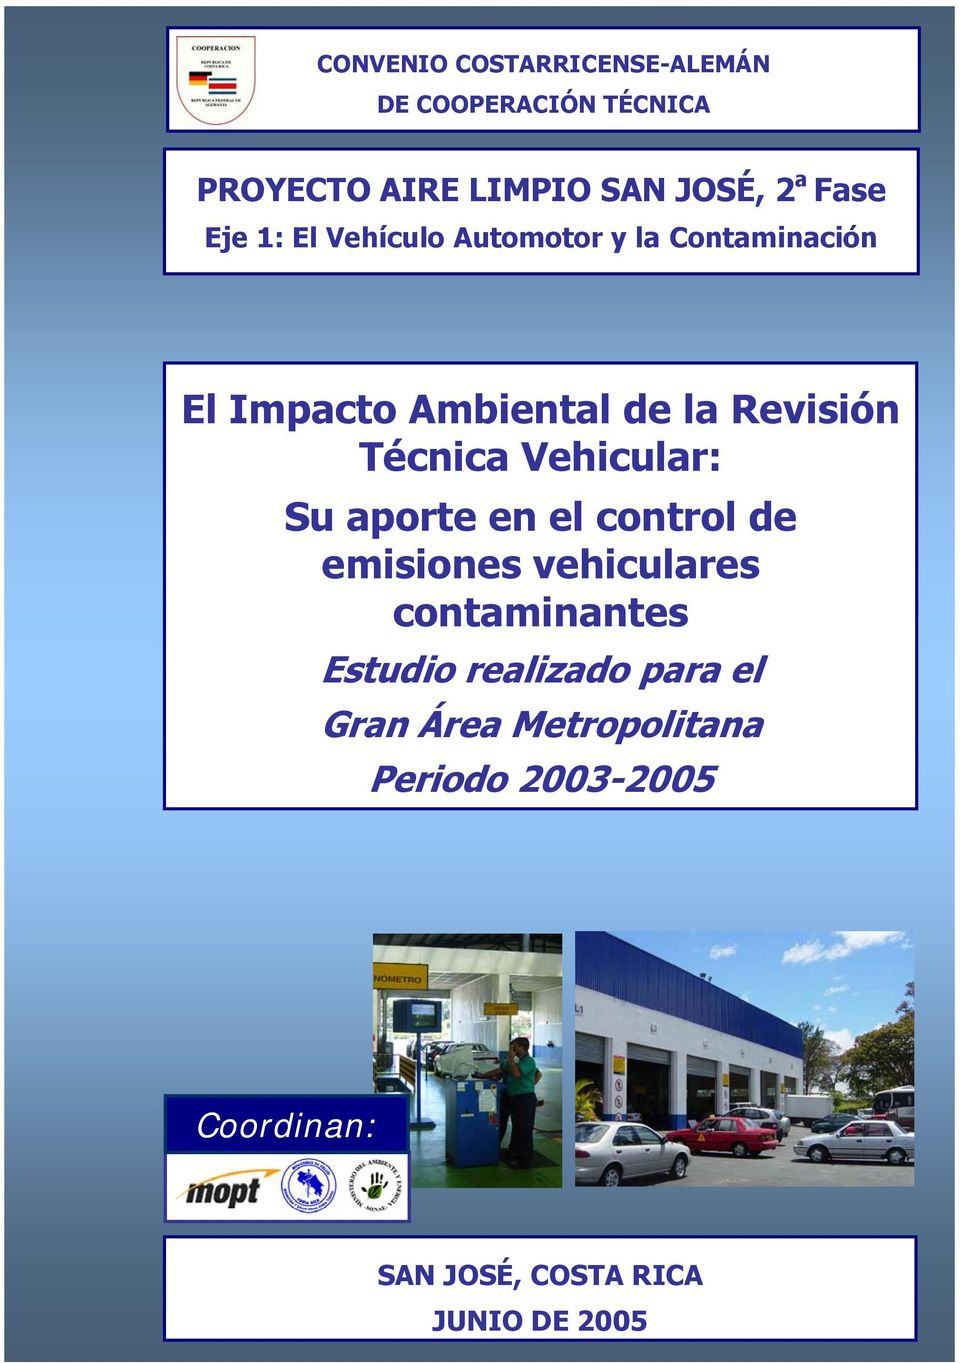 Vehicular: Su aporte en el control de emisiones vehiculares contaminantes Estudio realizado